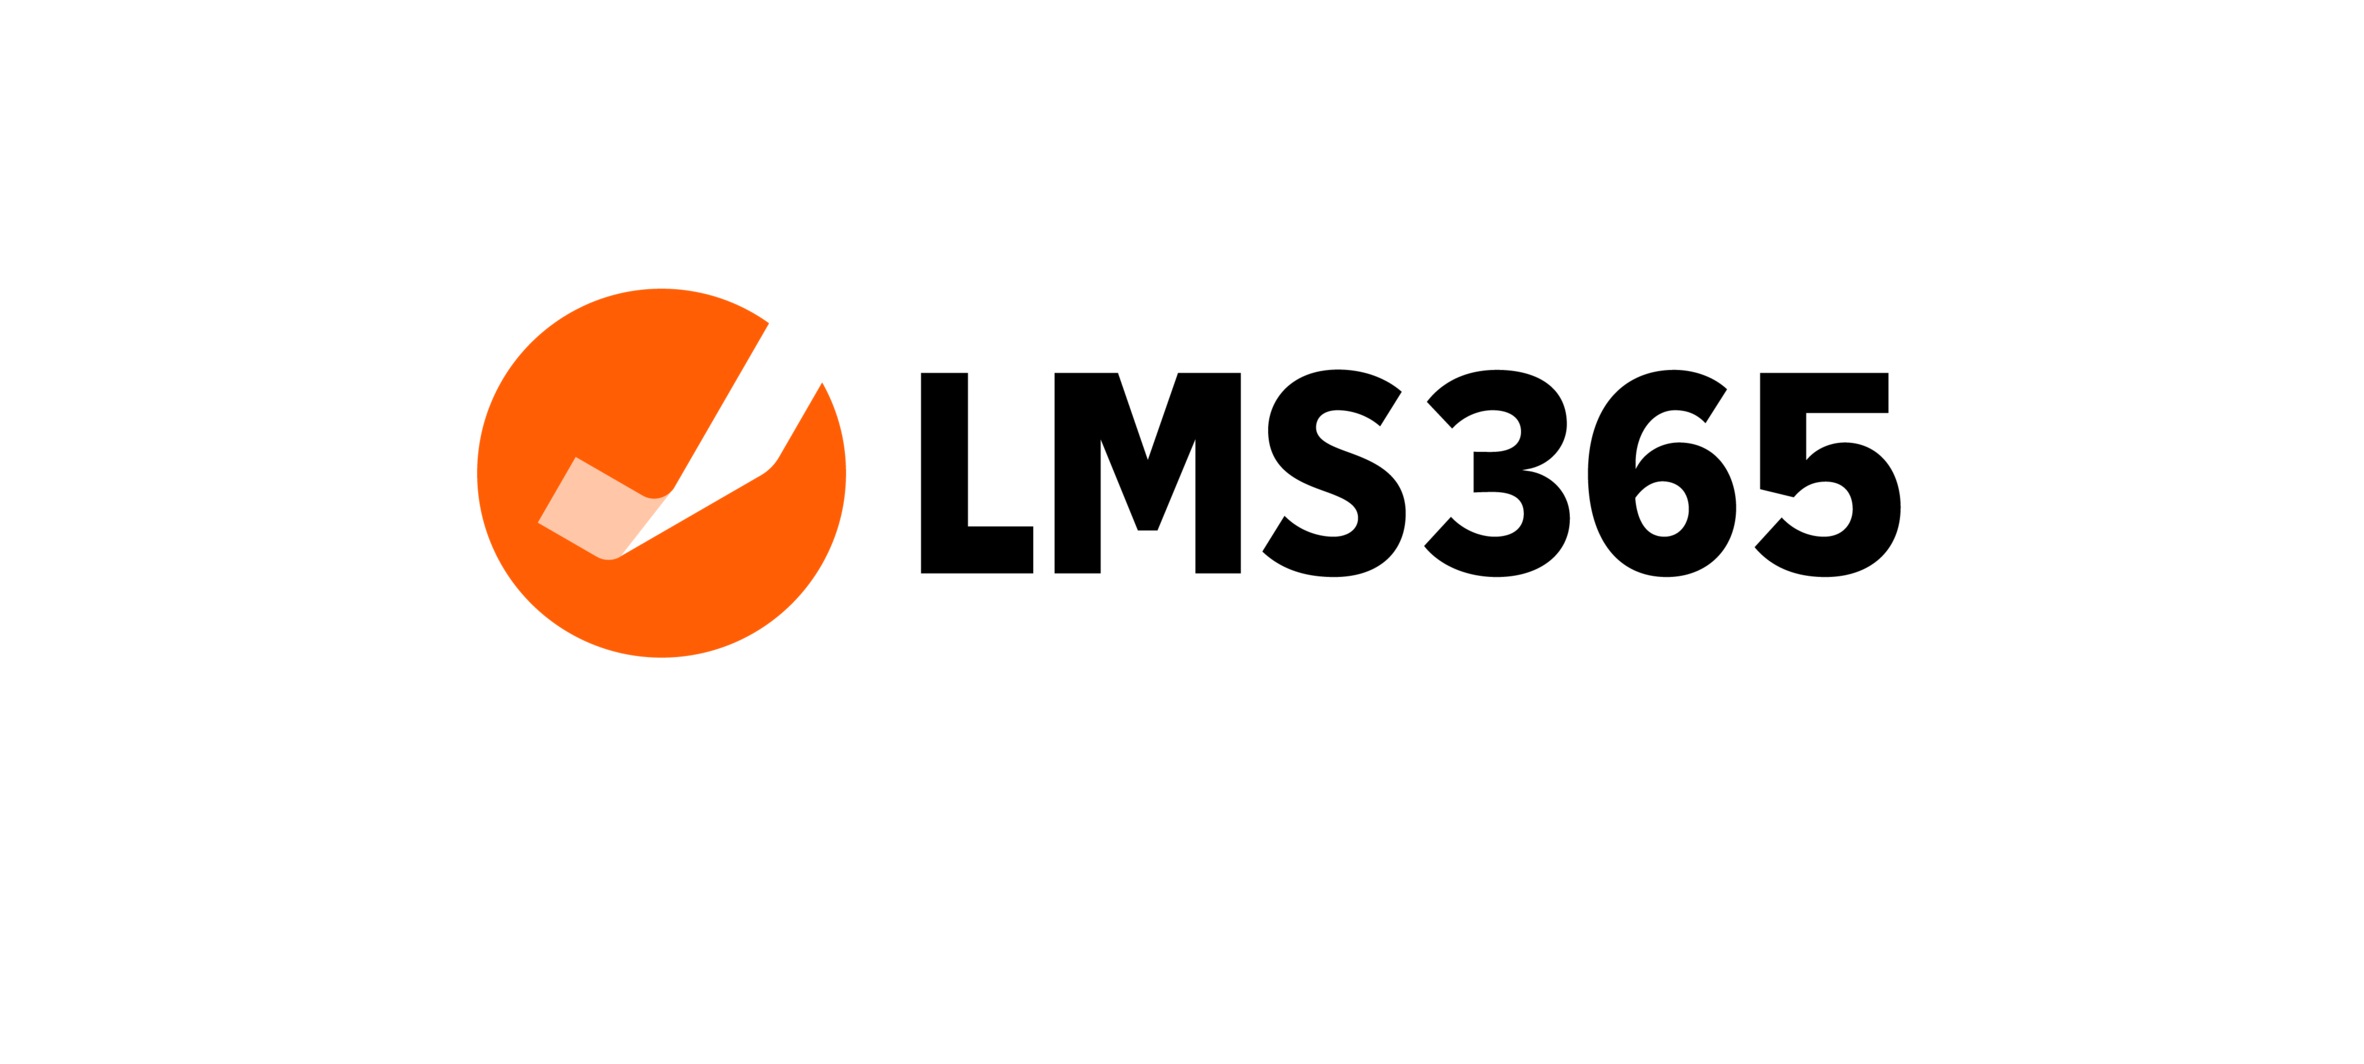 جذب سرمایه 20 میلیون دلاری سیستم آموزشی LMS365